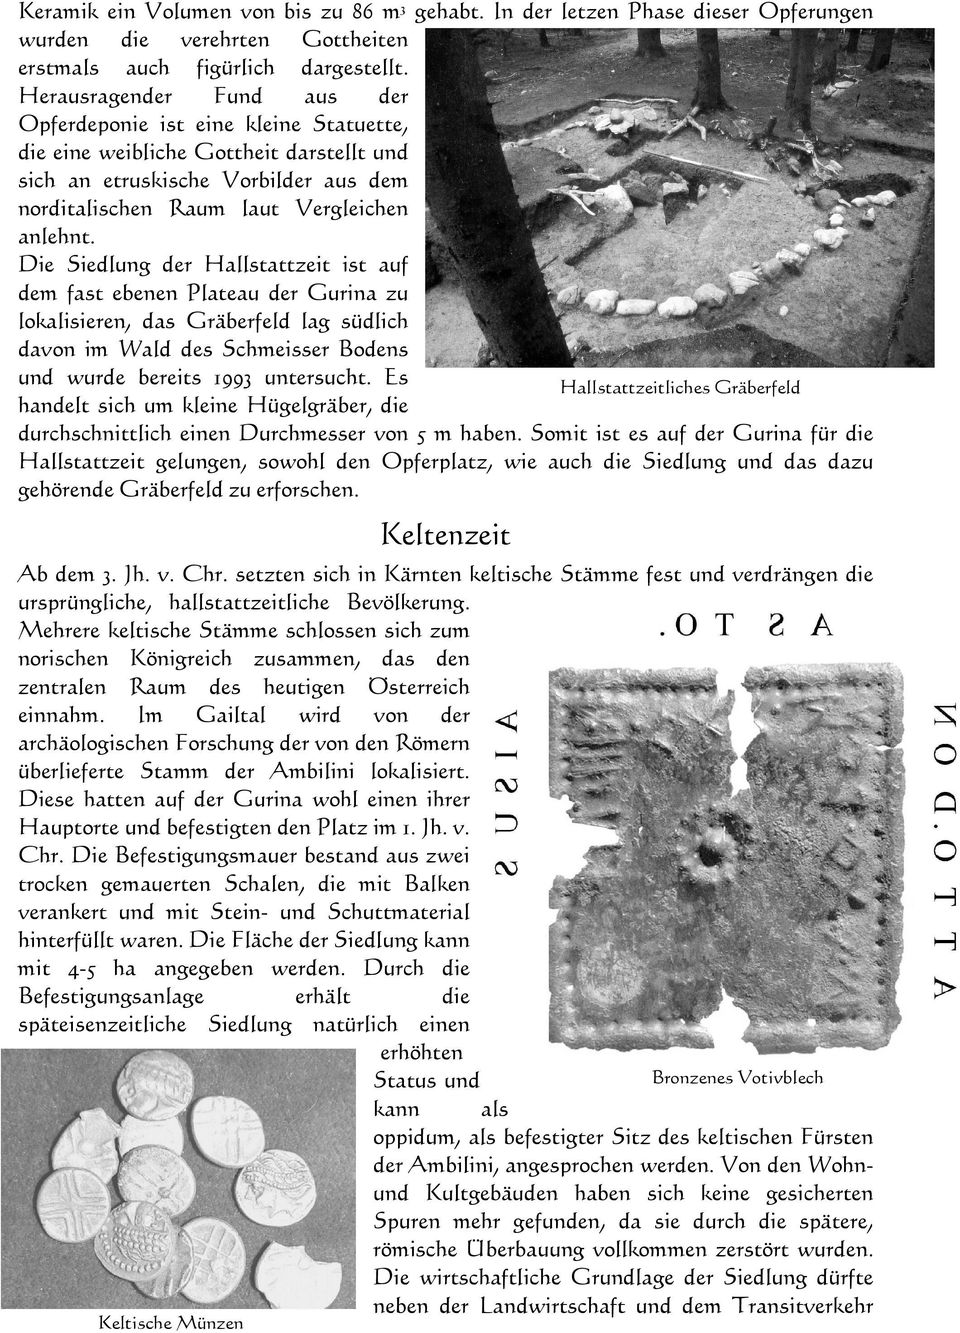 Die Siedlung der Hallstattzeit ist auf dem fast ebenen Plateau der Gurina zu lokalisieren, das Gräberfeld lag südlich davon im Wald des Schmeisser Bodens und wurde bereits 1993 untersucht.